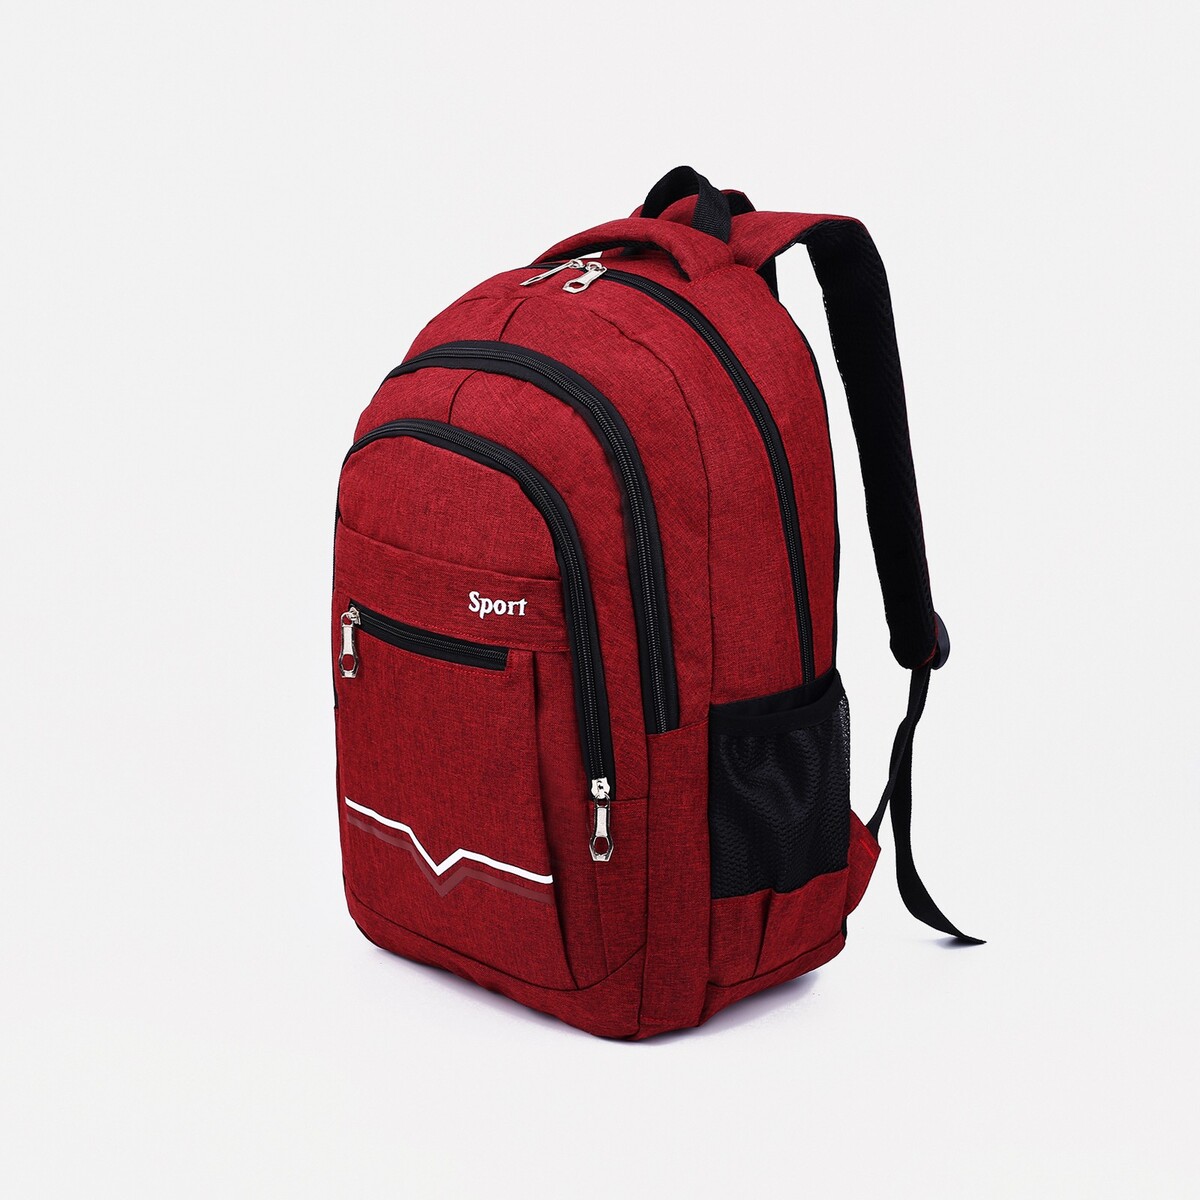 Рюкзак на молнии, 2 наружных кармана, цвет бордовый рюкзак wenger urban contemporary 605024 14 бордовый 14 л